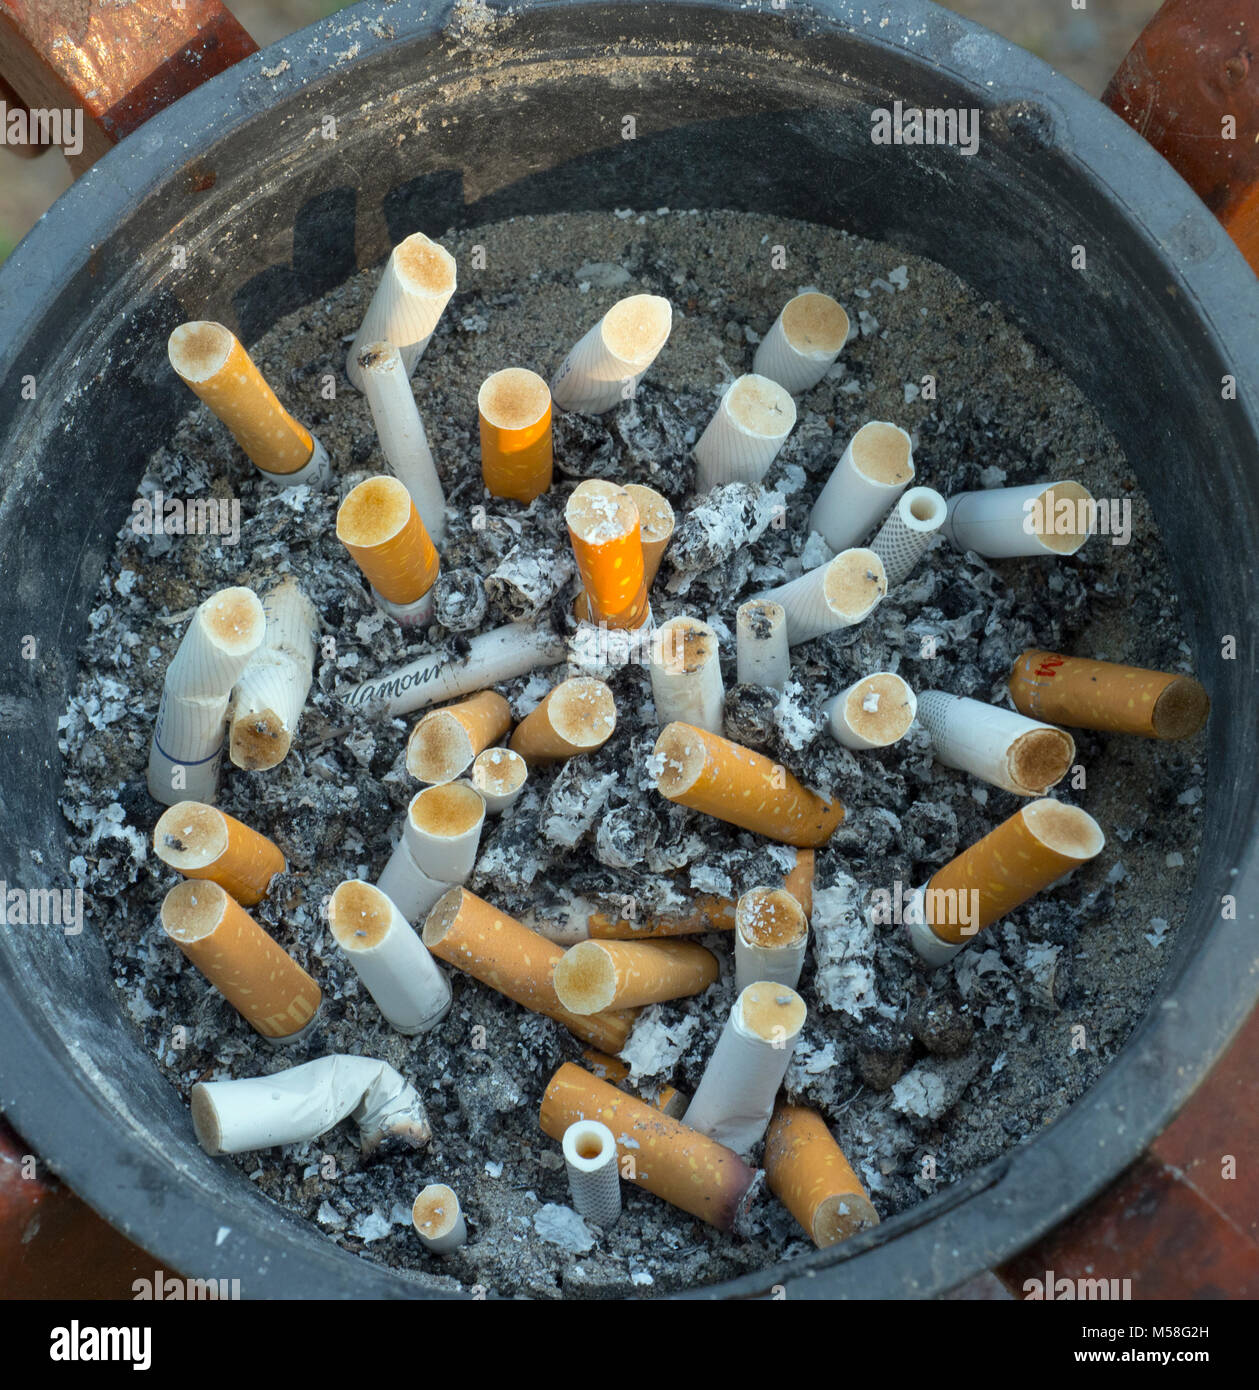 Les cigarettes se terminent dans un cendrier dans la zone fumeurs de l'hôtel Banque D'Images